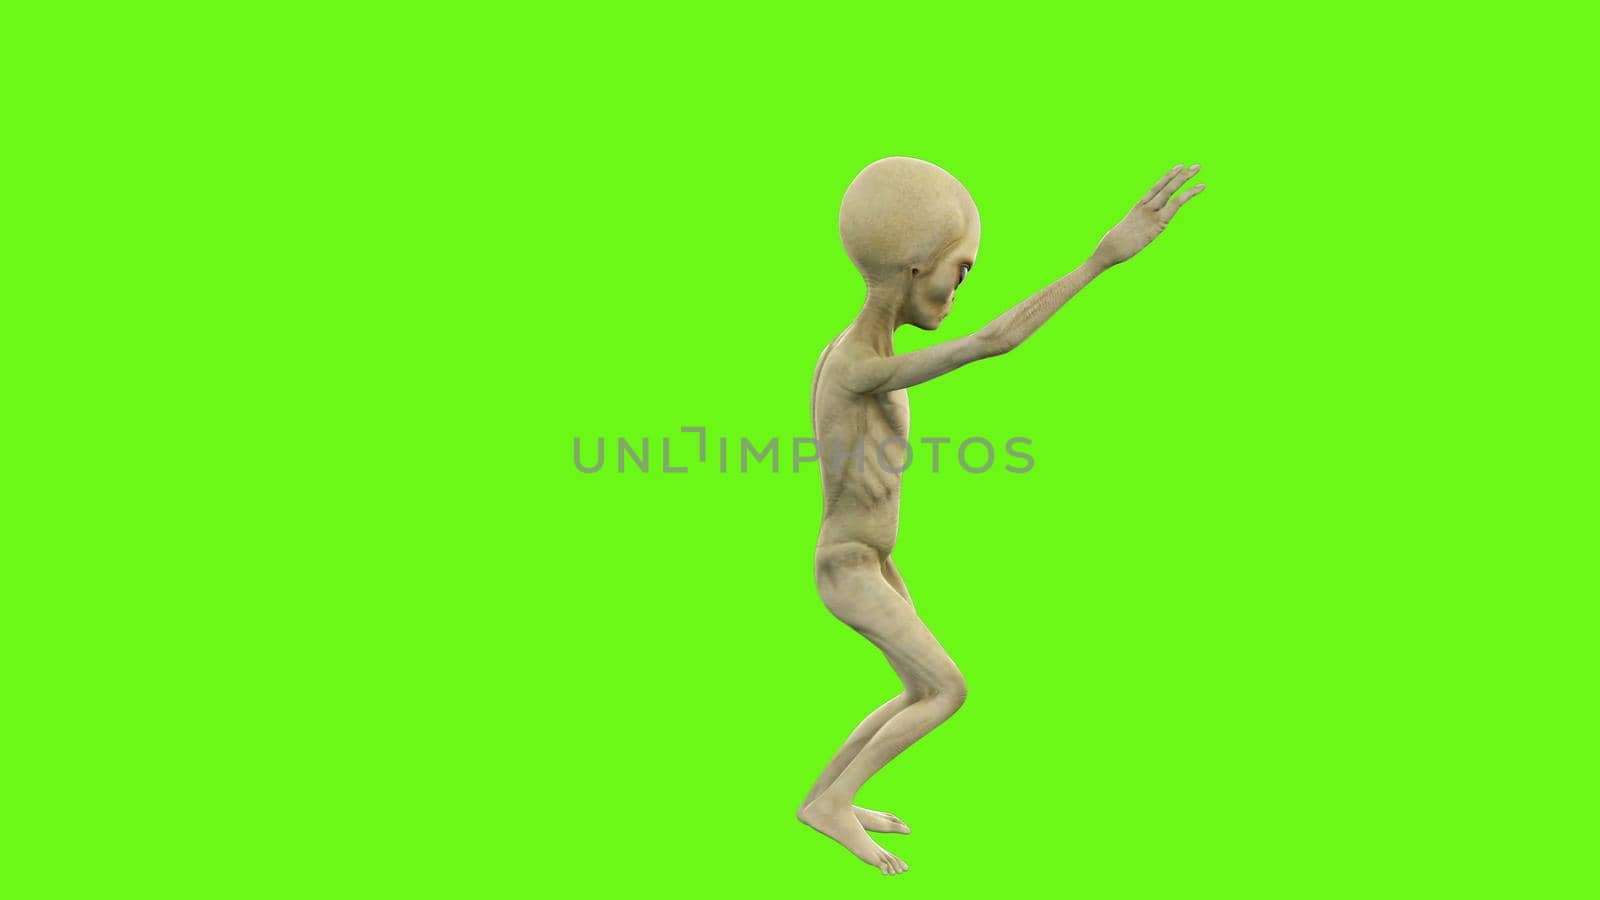 Alien dancing on green screen. 3D rendering by designprojects